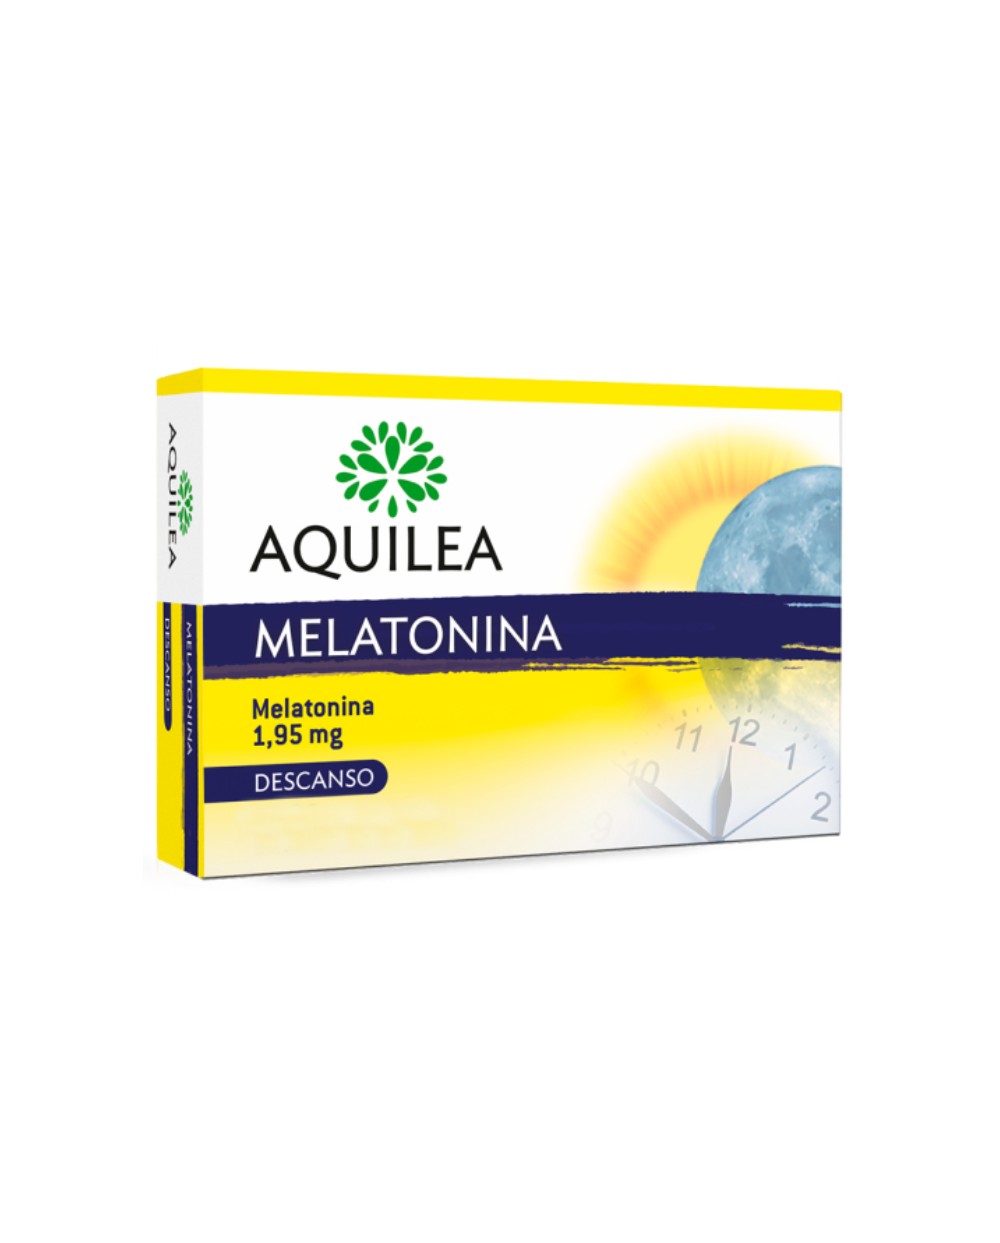 Aquilea Melatonina 1,95 mg 30 Comprimidos